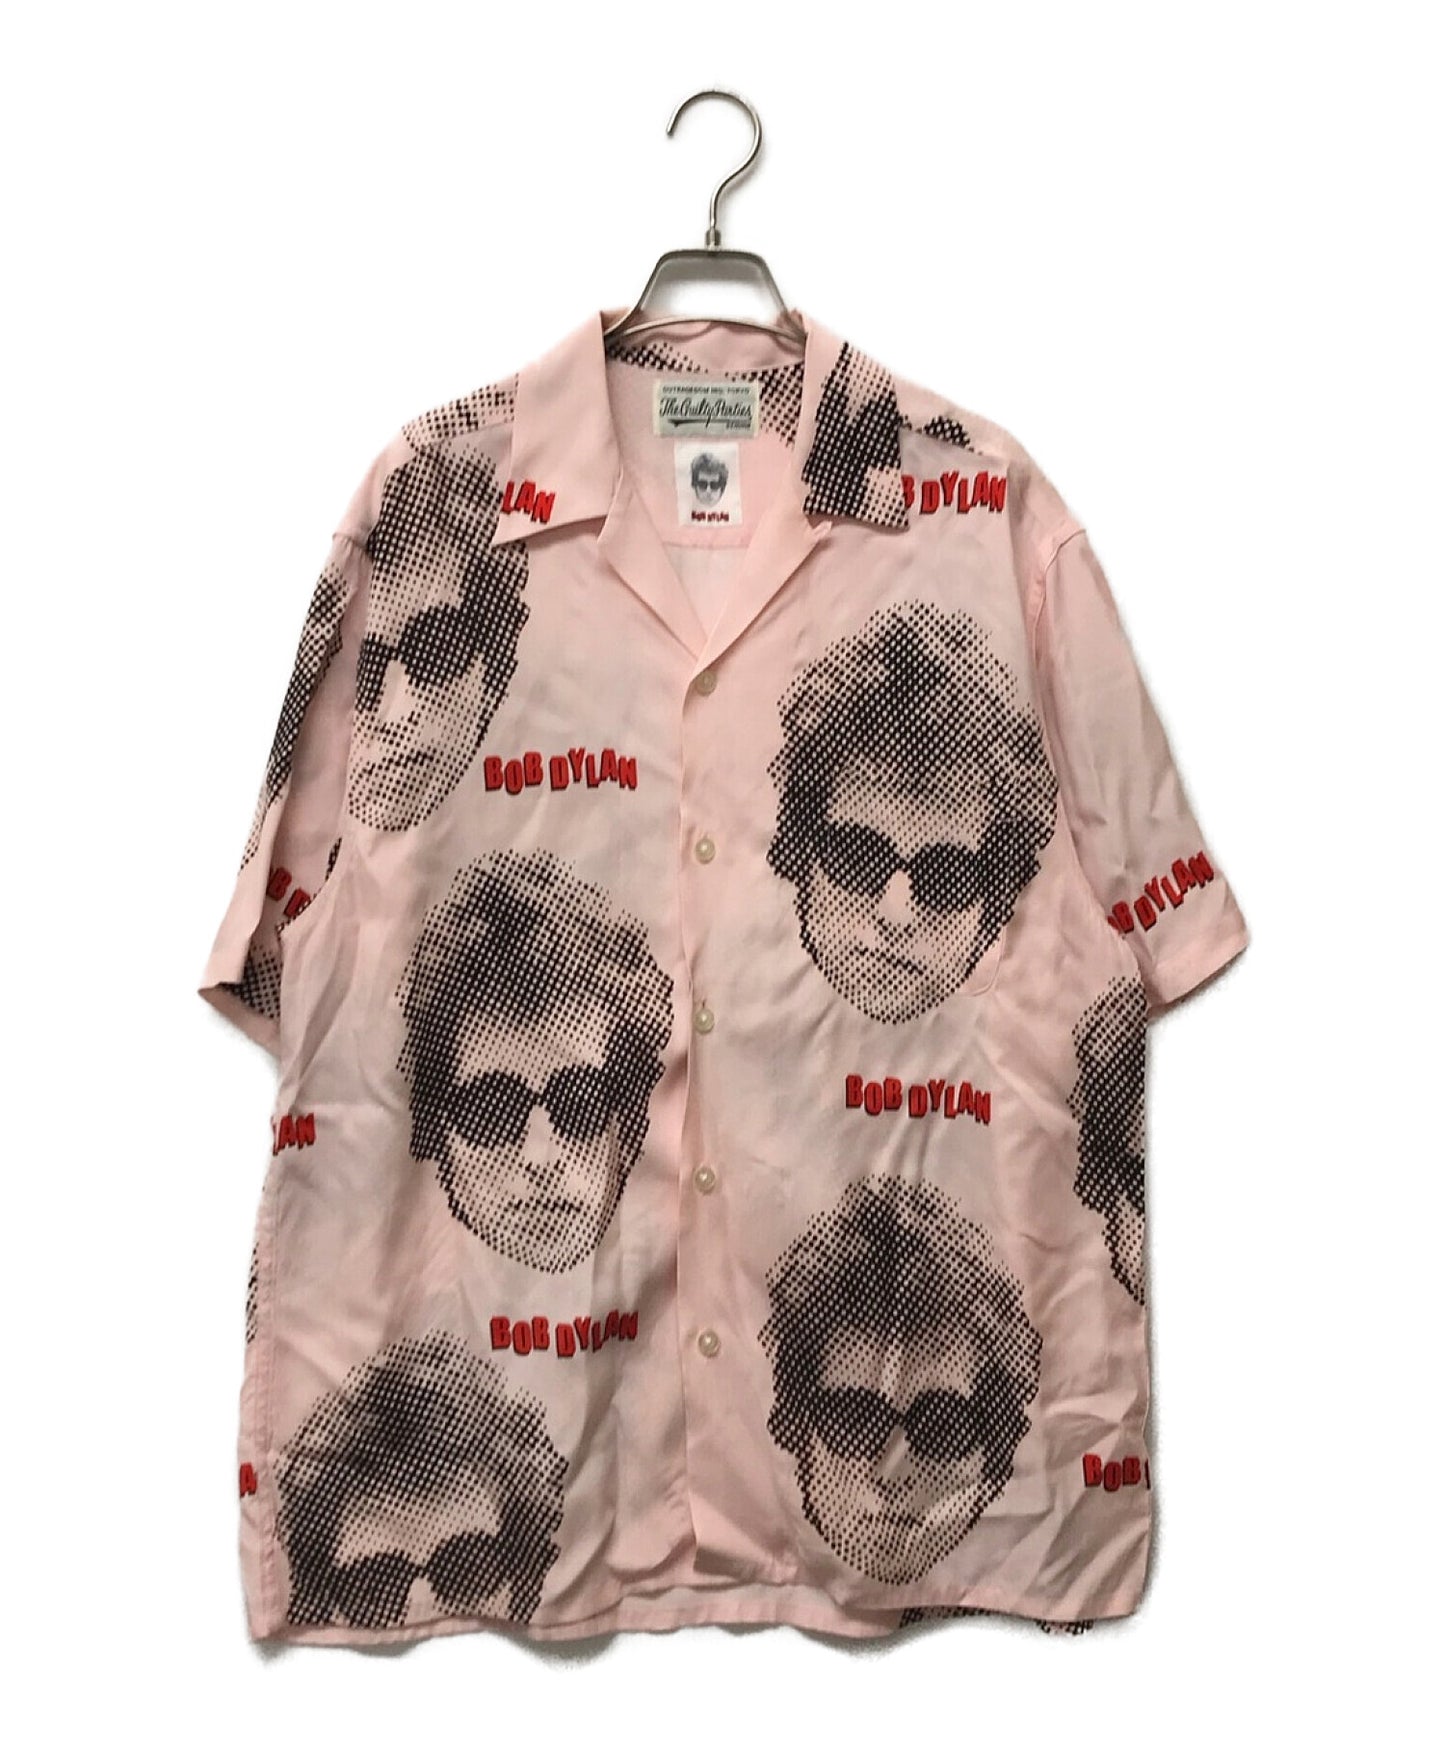 Wacko Maria Bob Dylan s/s เสื้อฮาวาย